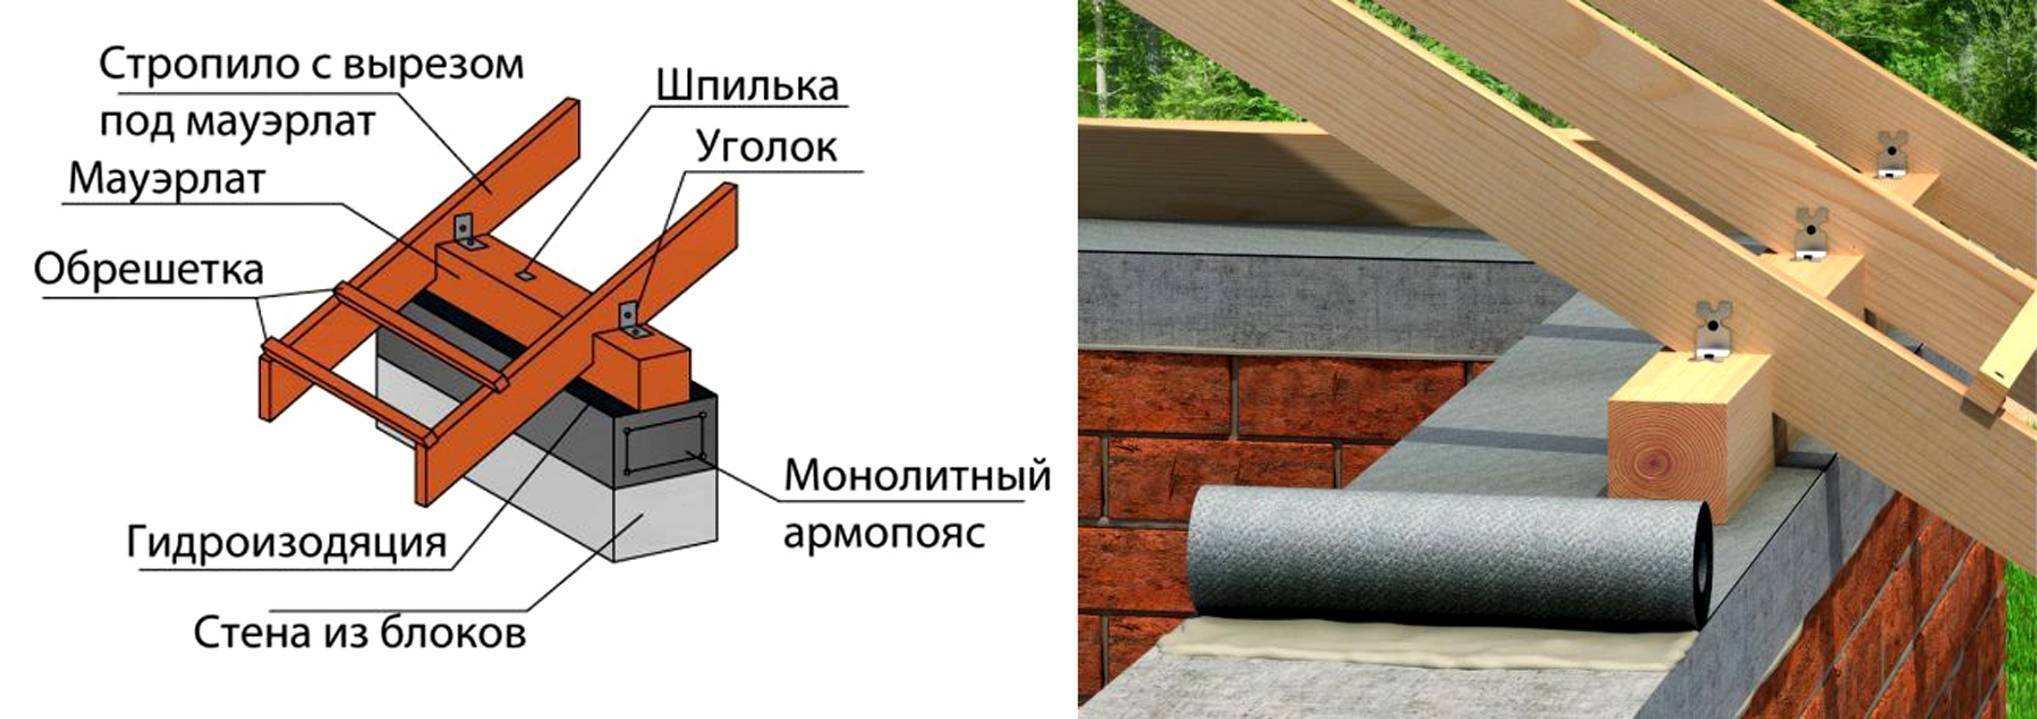 Крыша к дому из пеноблоков: особенности и процесс монтажа, практические советы